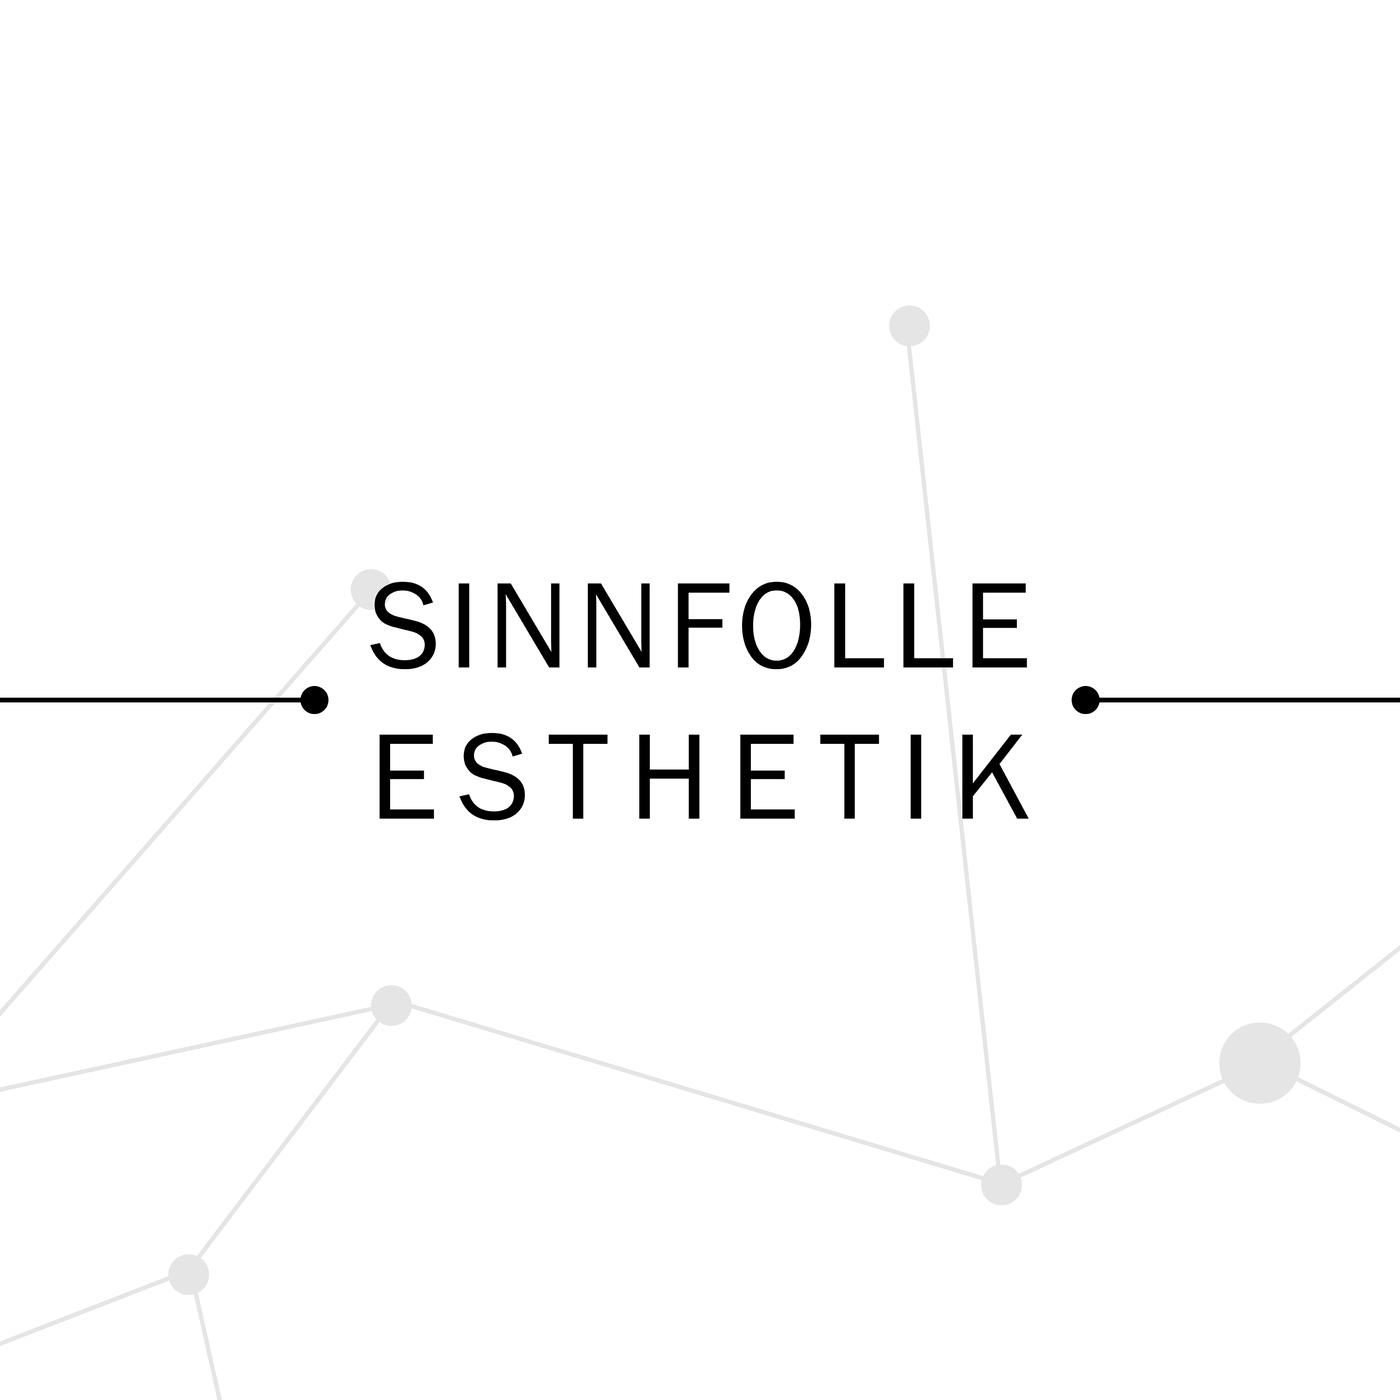 SINNFOLLE ESTHETIK - Der Podcast über Gestaltung und Ermächtigung